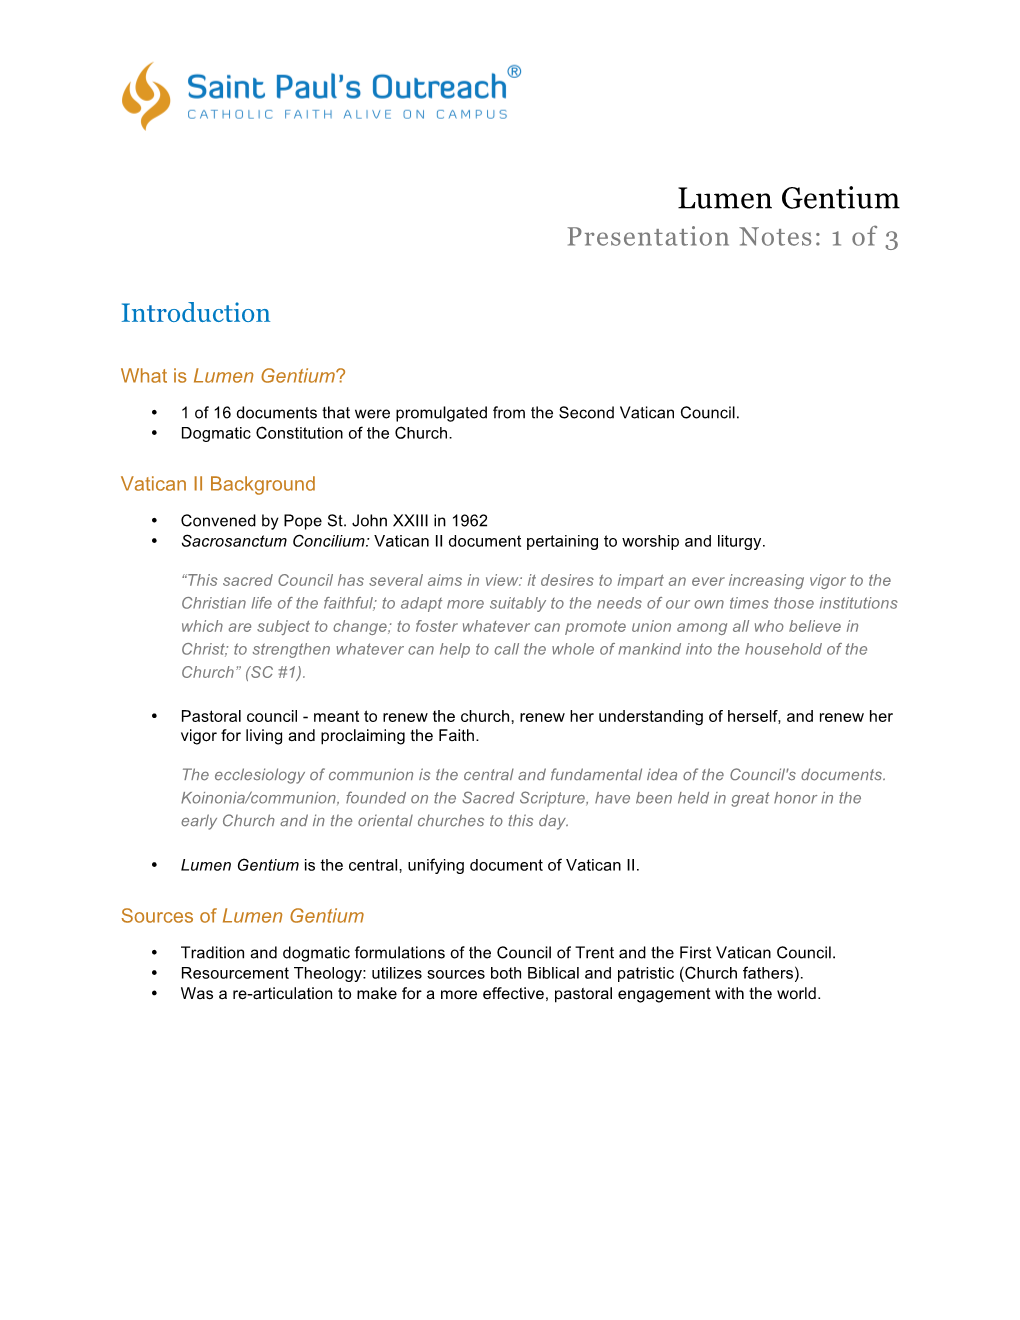 Lumen Gentium Presentation Notes: 1 of 3